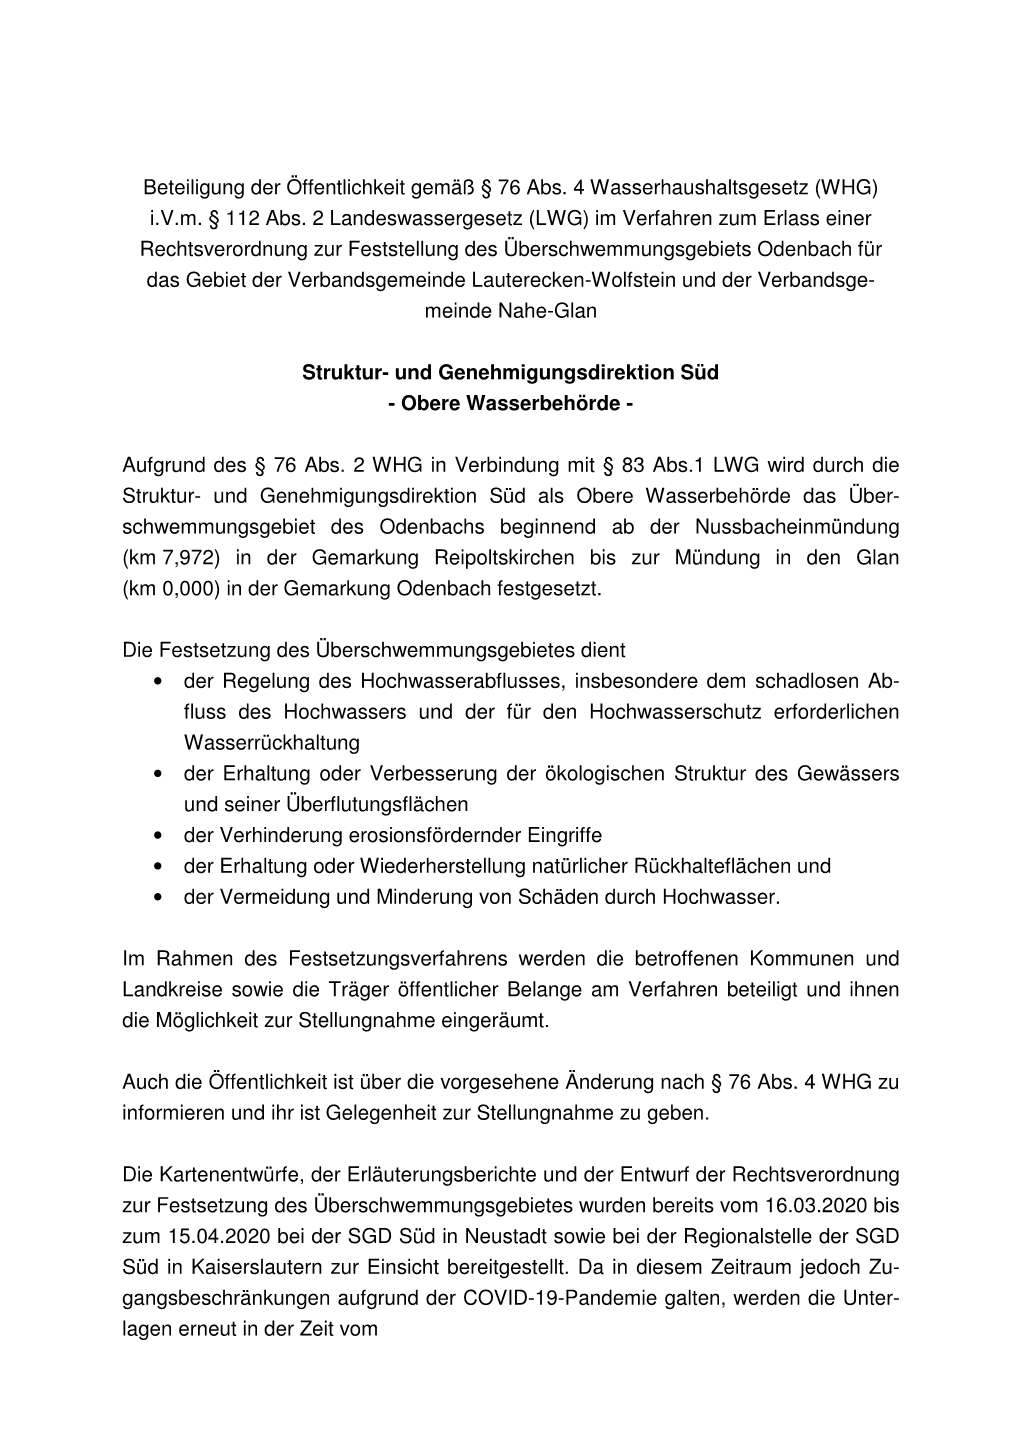 Wiederholung Bekanntmachung VG Lauterecken-Wolfstein